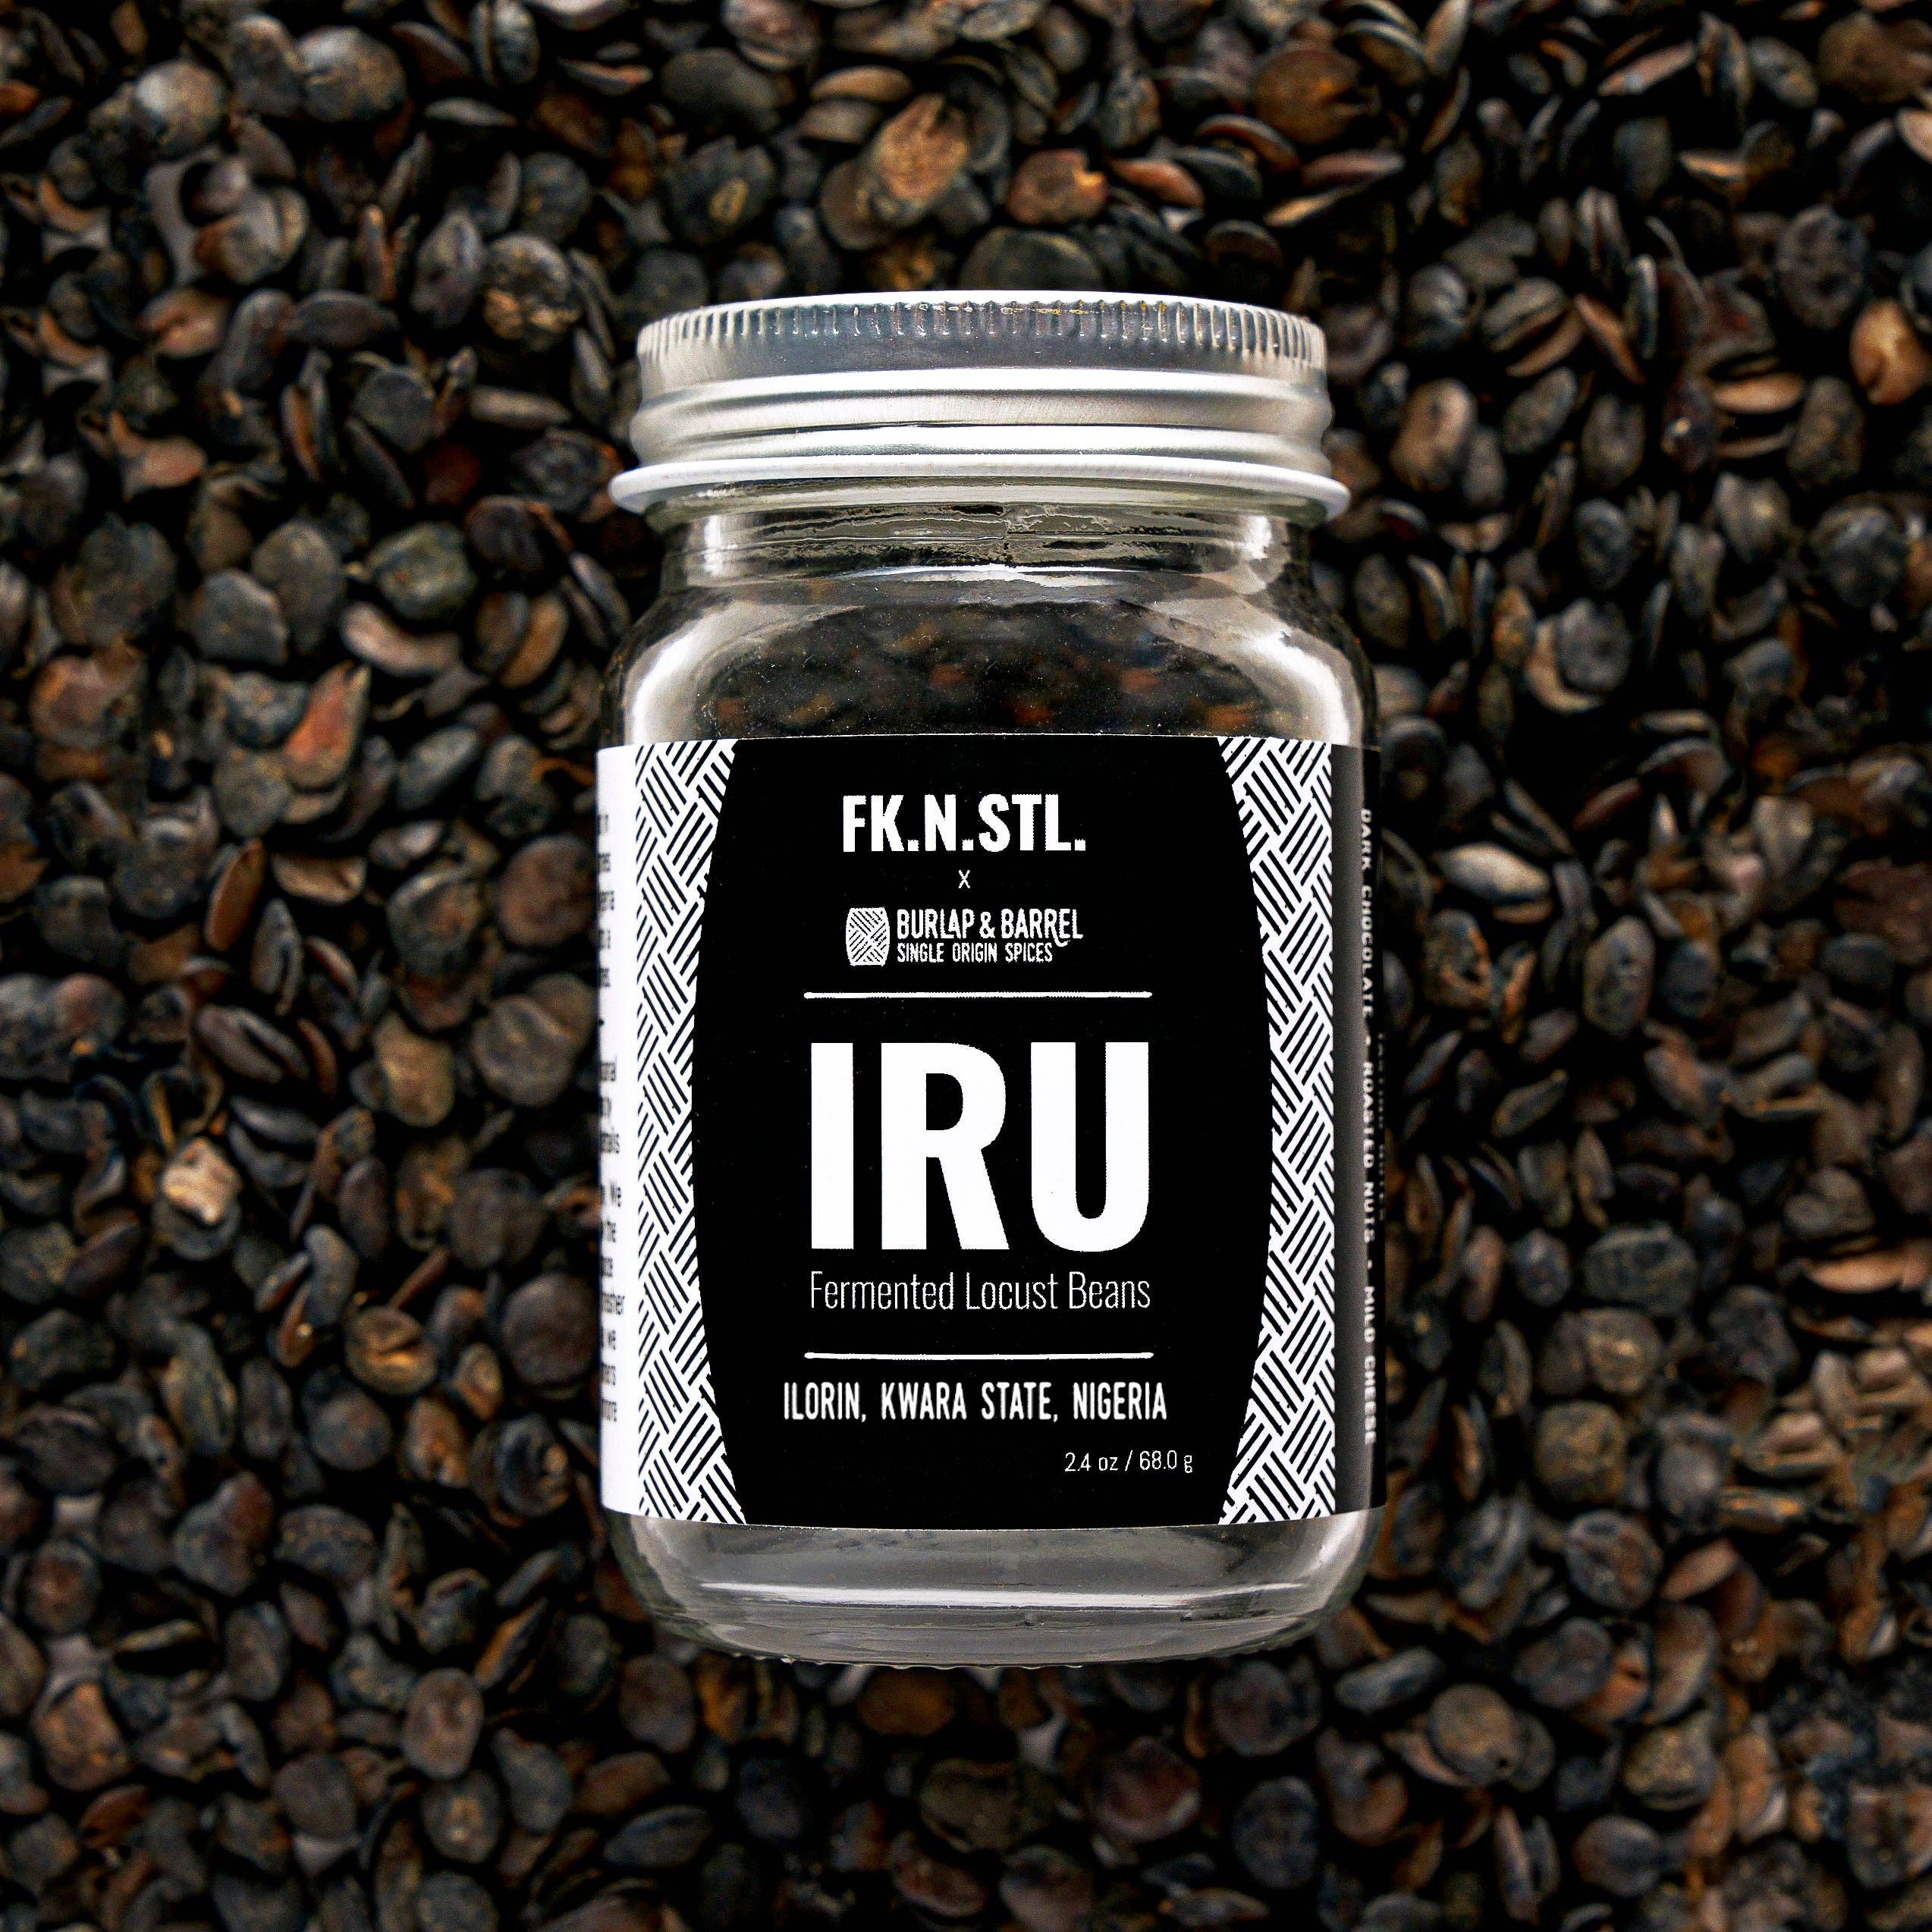 Iru (Fermented Locust Beans) - Single Origin Spice